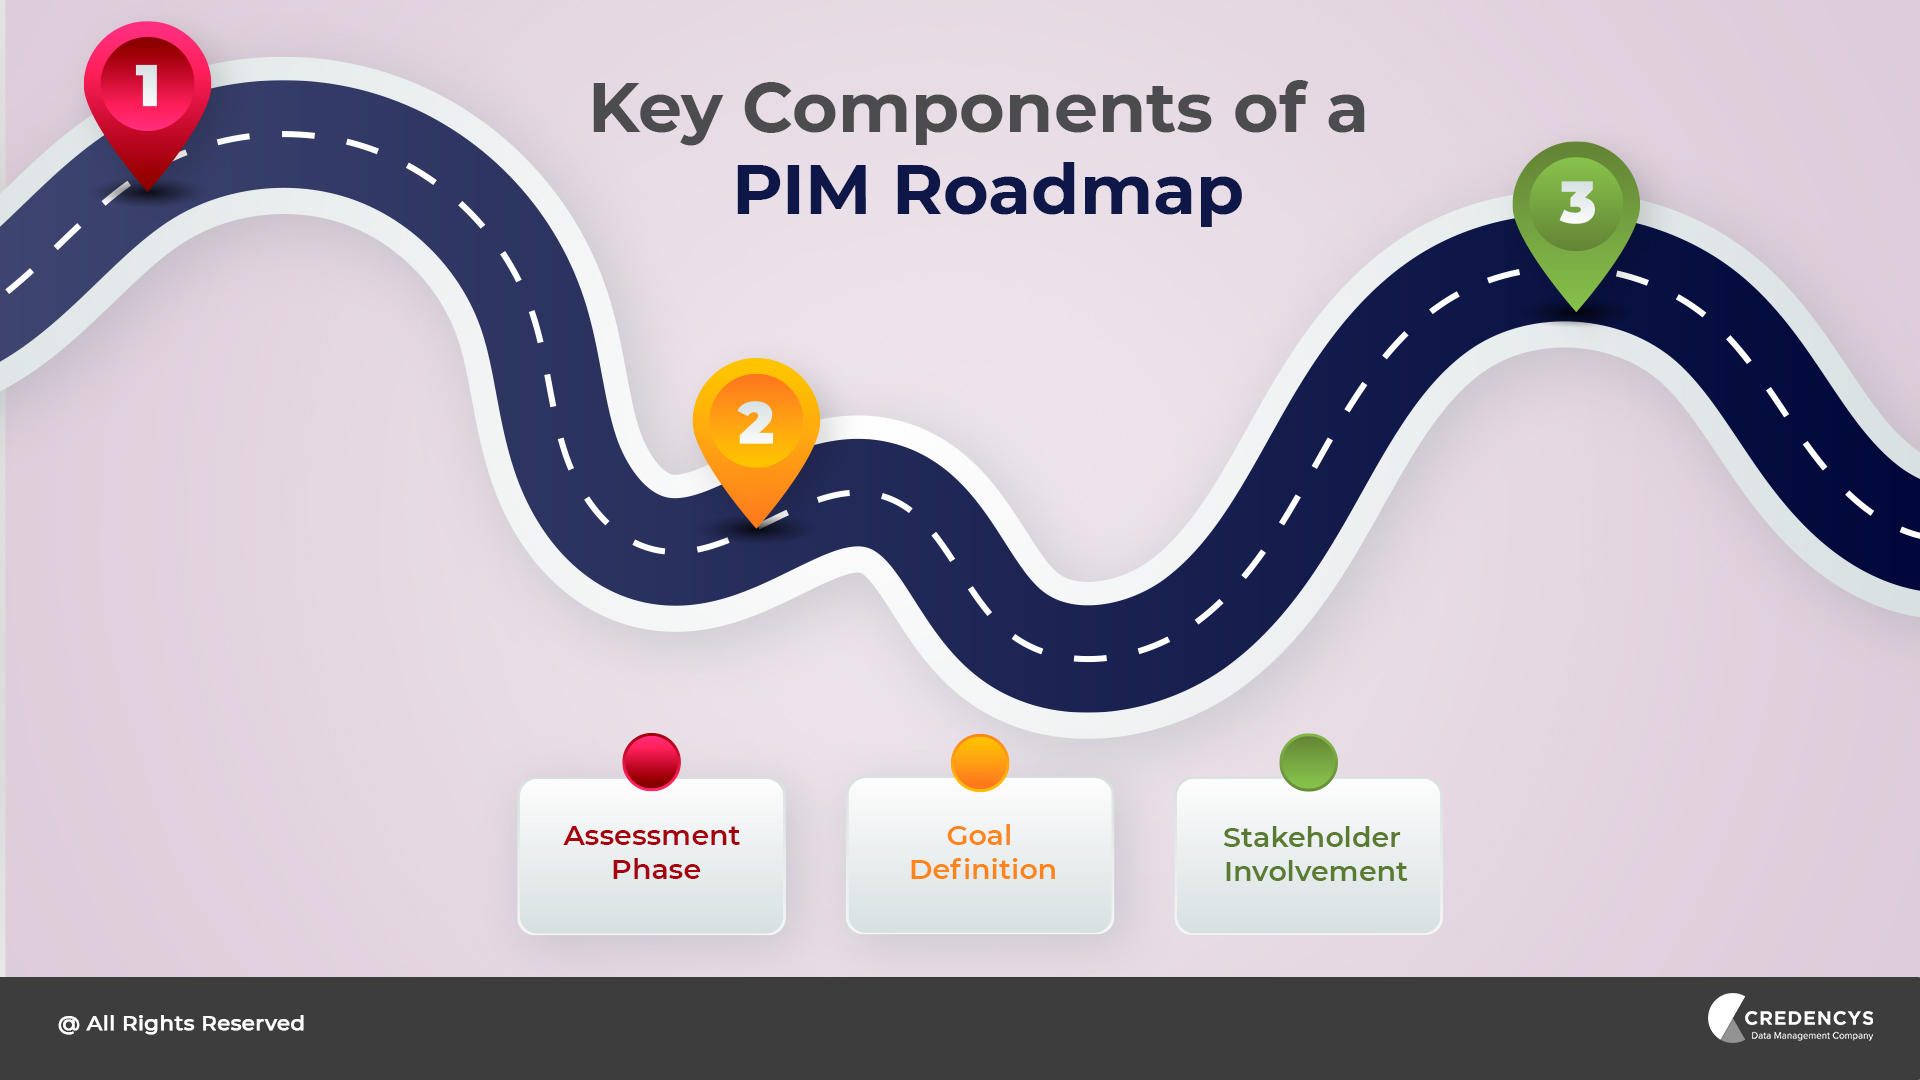 Key Components of a PIM Roadmap